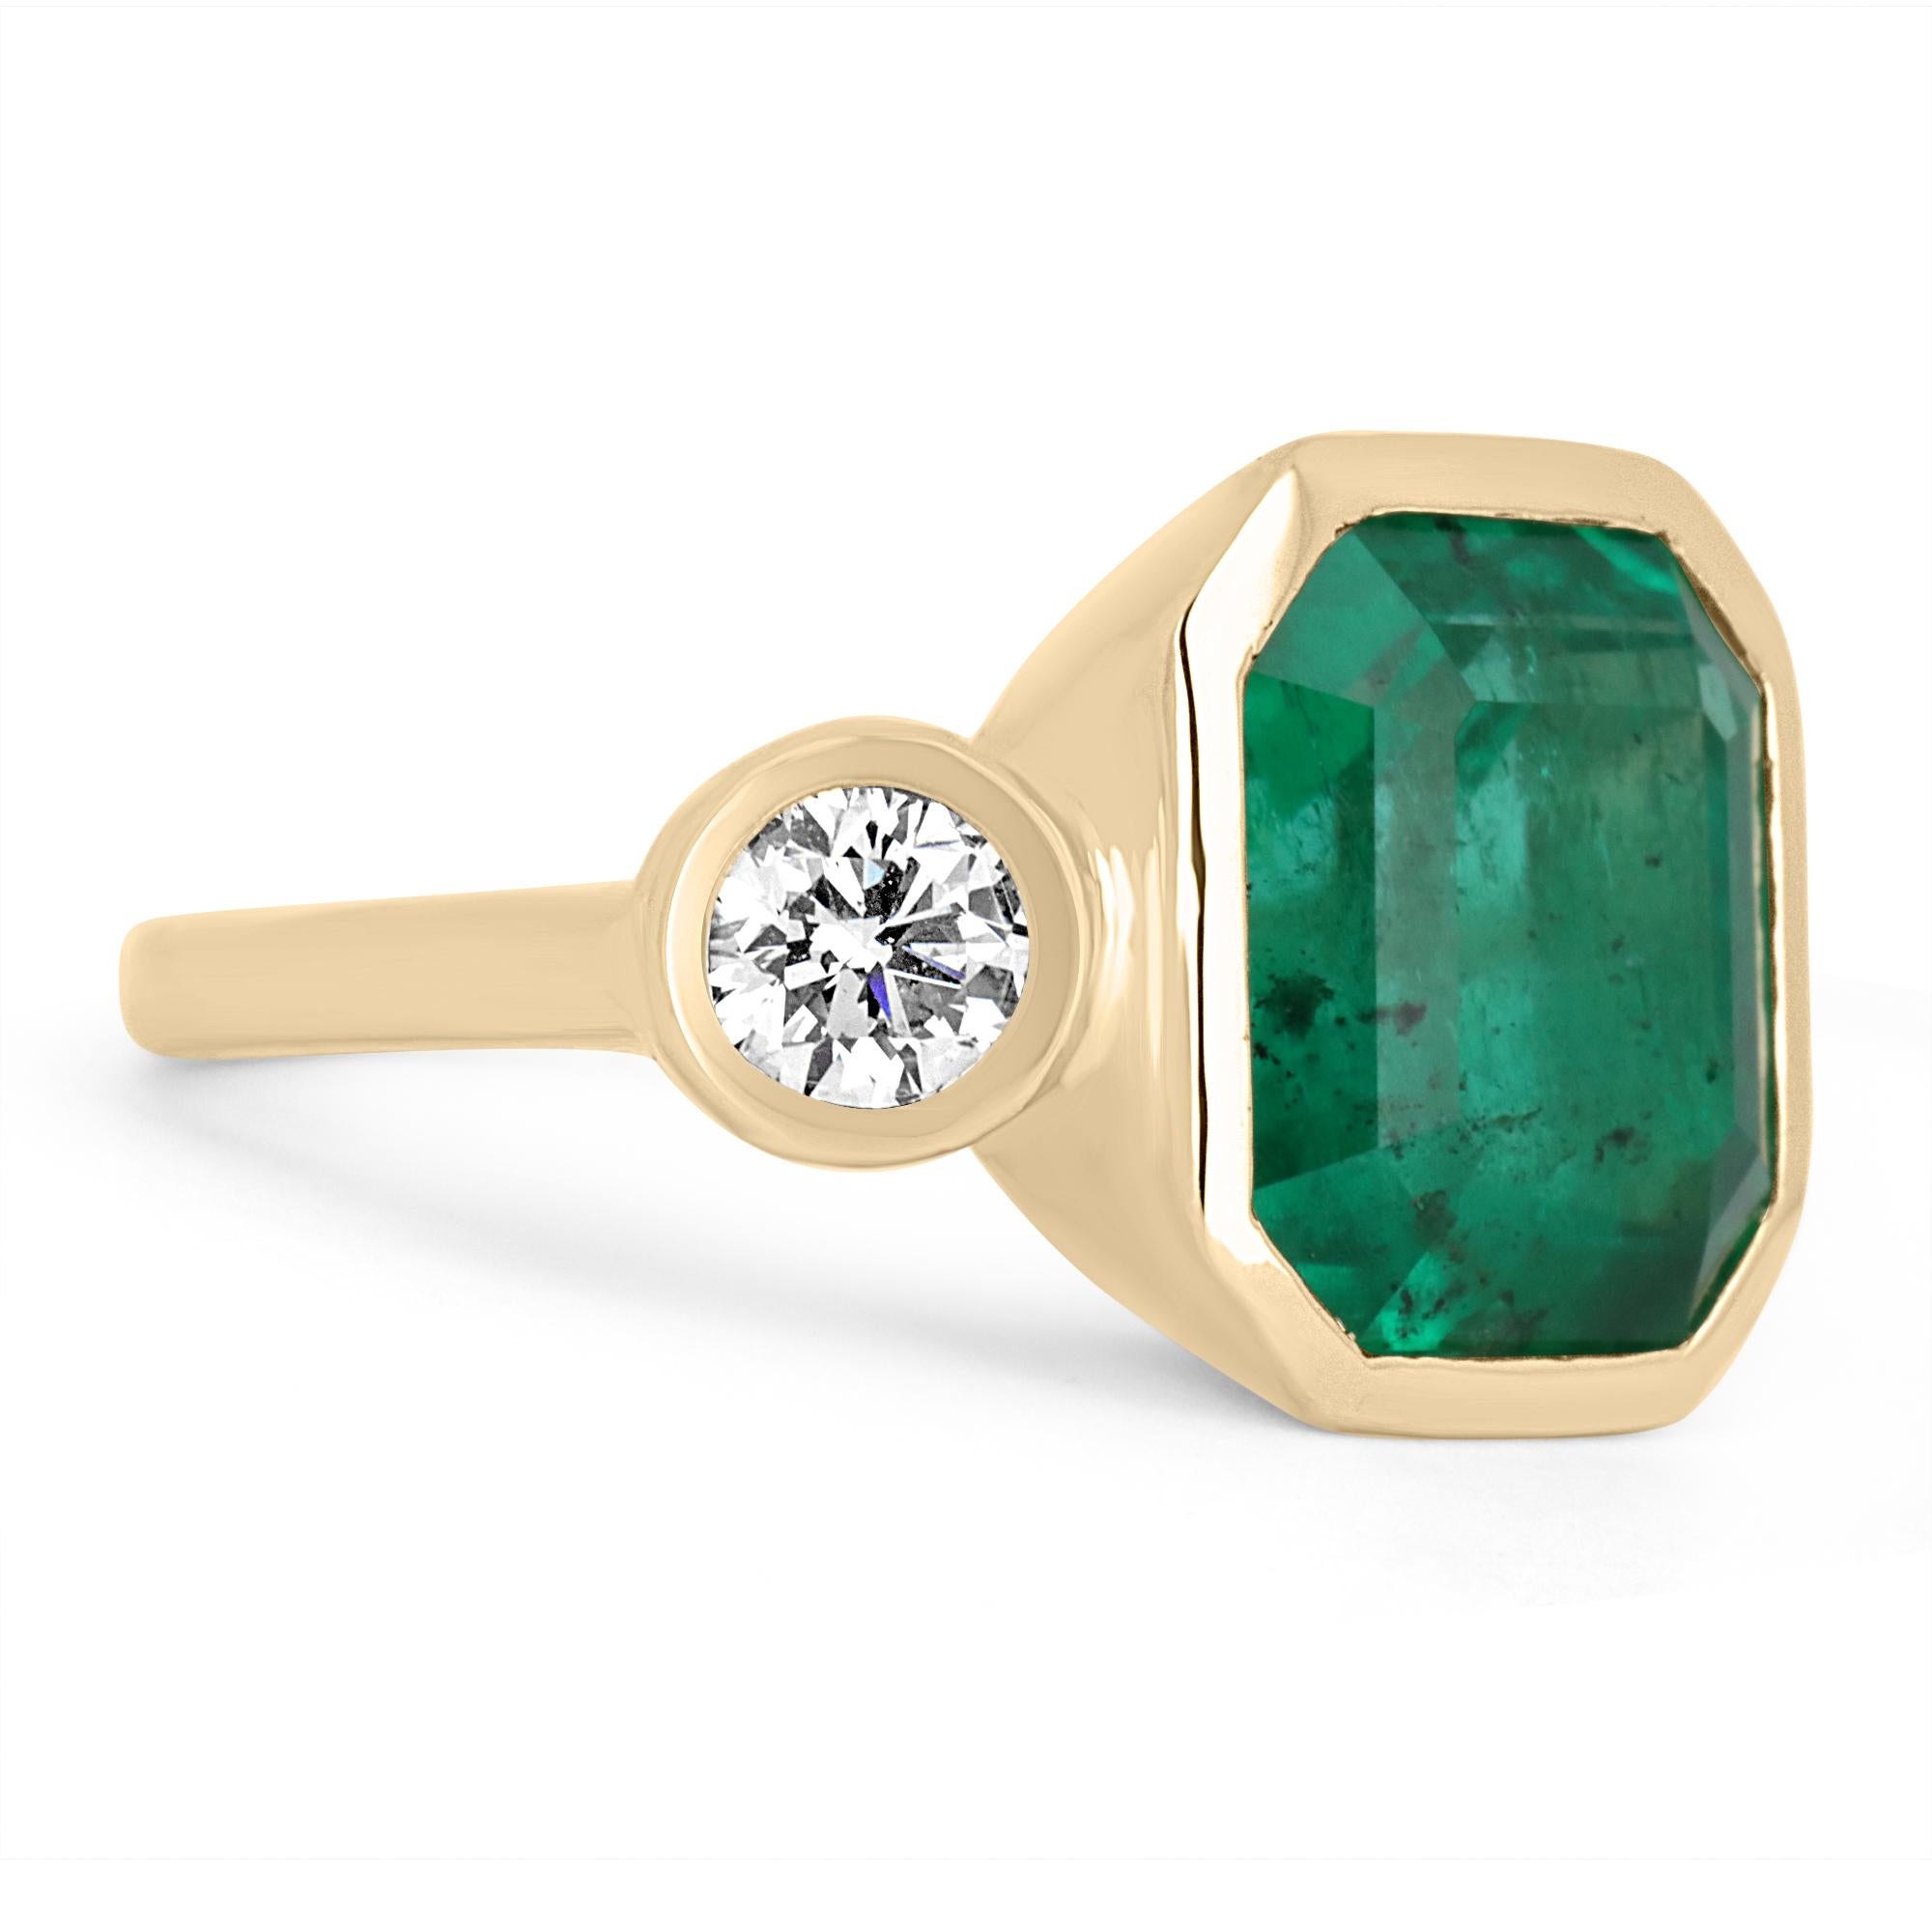 Entworfen und gestaltet von Jorge Rodriguez. Dieser Ring ist aus feinem 18-karätigem Gelbgold gefertigt und enthält einen hochwertigen 10,0-karätigen natürlichen kolumbianischen Smaragd, der aus den berühmten Muzo-Minen stammt. Für zusätzlichen